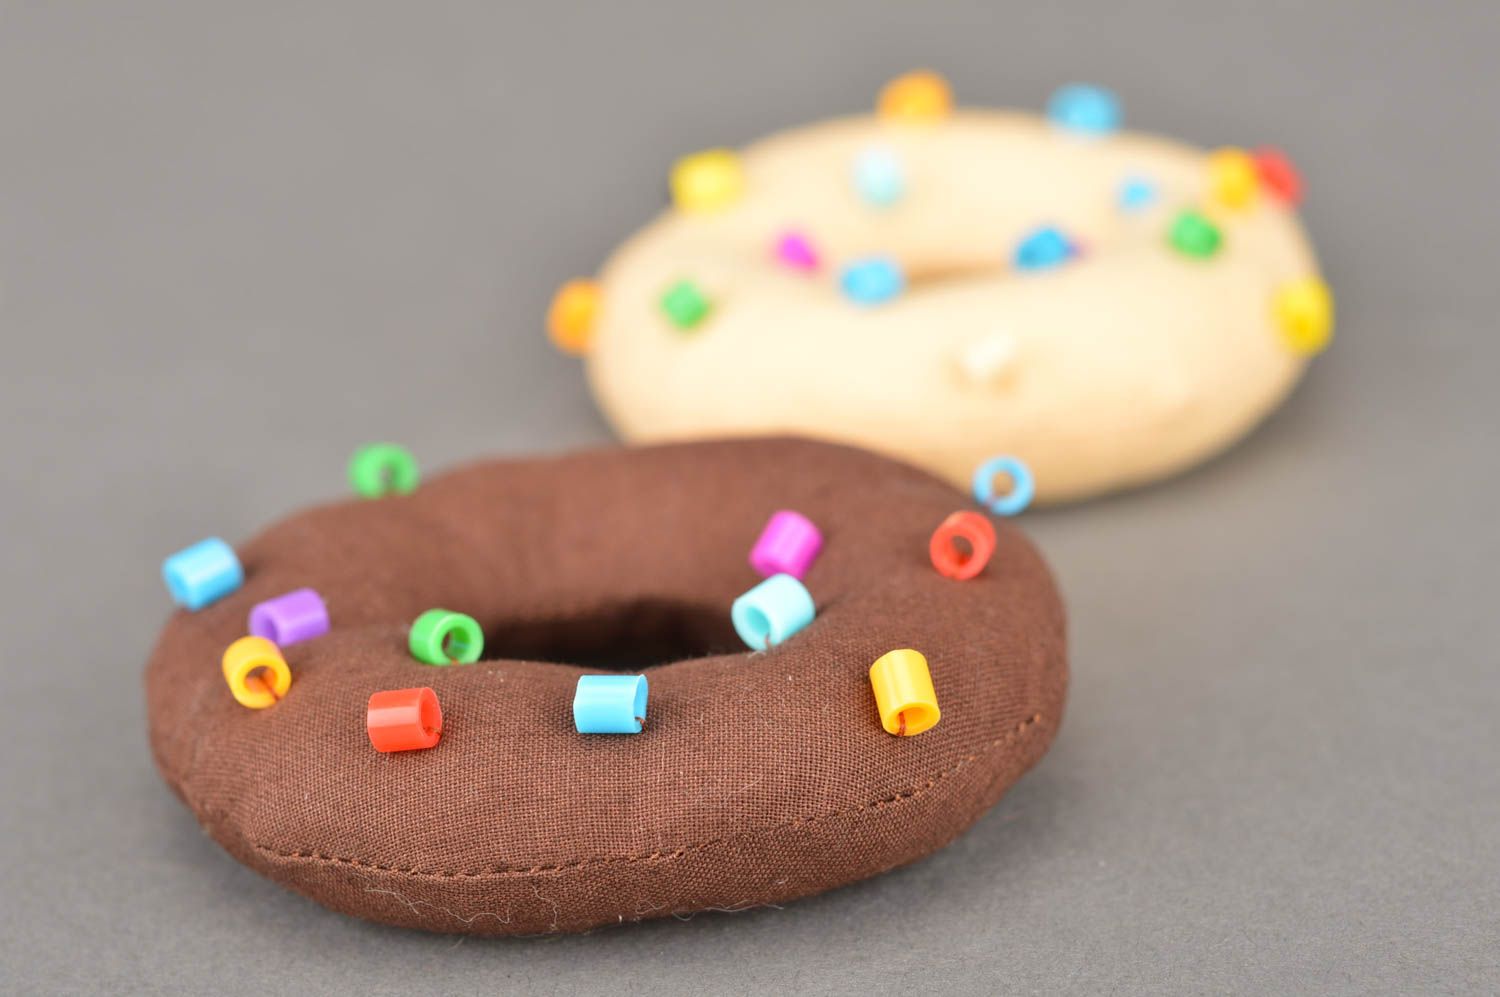 Deko Donuts aus Stoff 2 Stück mit dekorativen Elementen in Form von Streusel foto 5